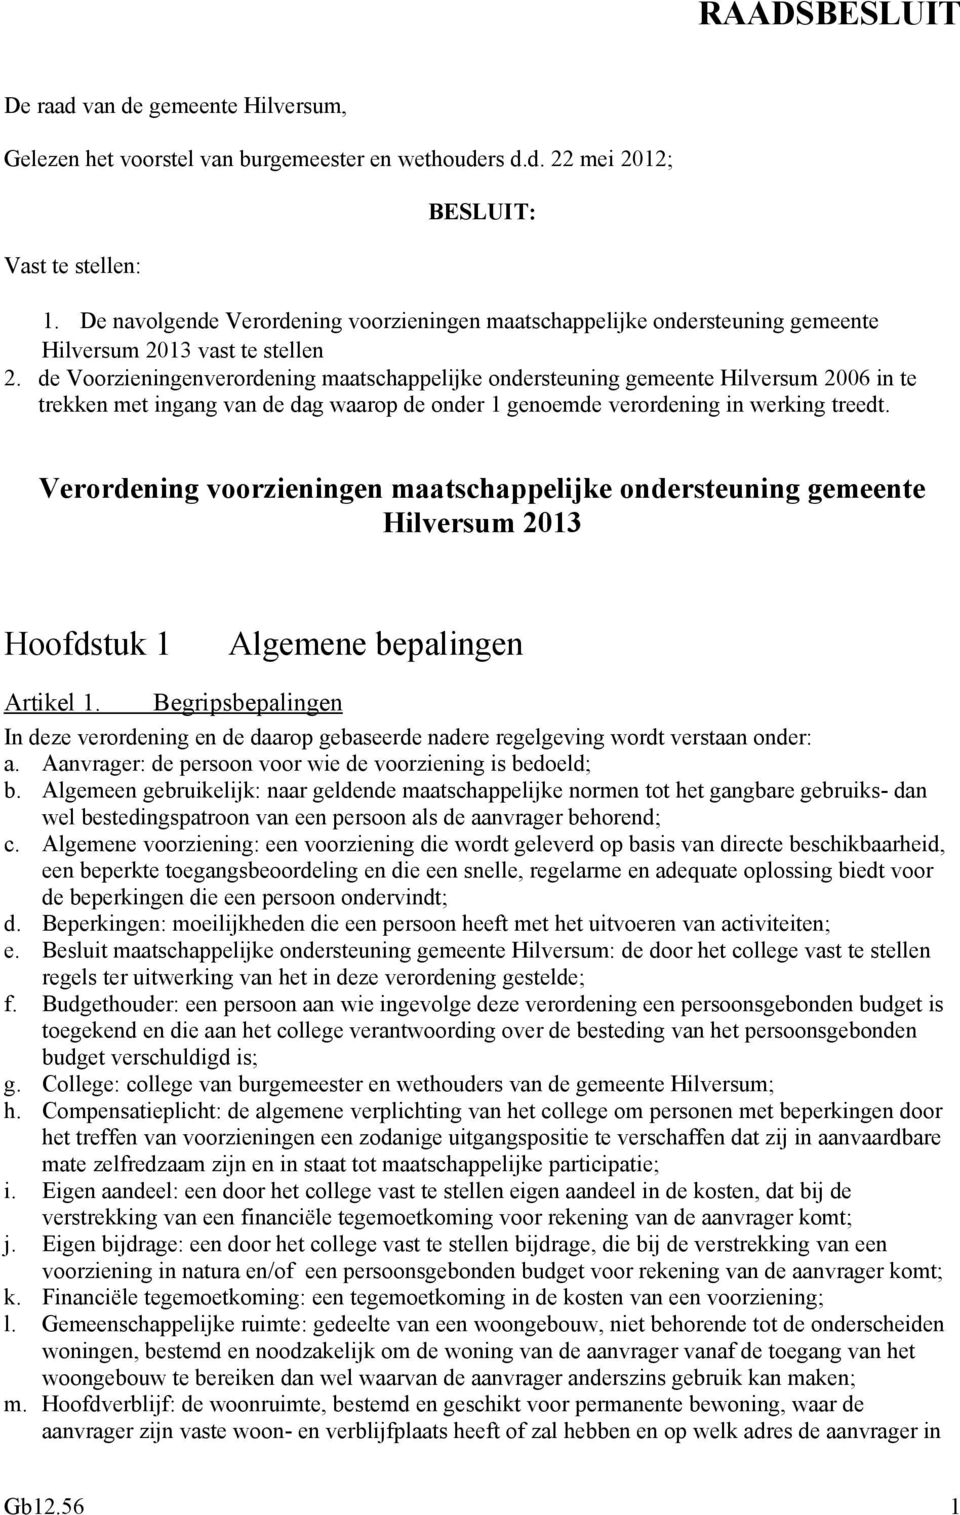 de Voorzieningenverordening maatschappelijke ondersteuning gemeente Hilversum 2006 in te trekken met ingang van de dag waarop de onder 1 genoemde verordening in werking treedt.